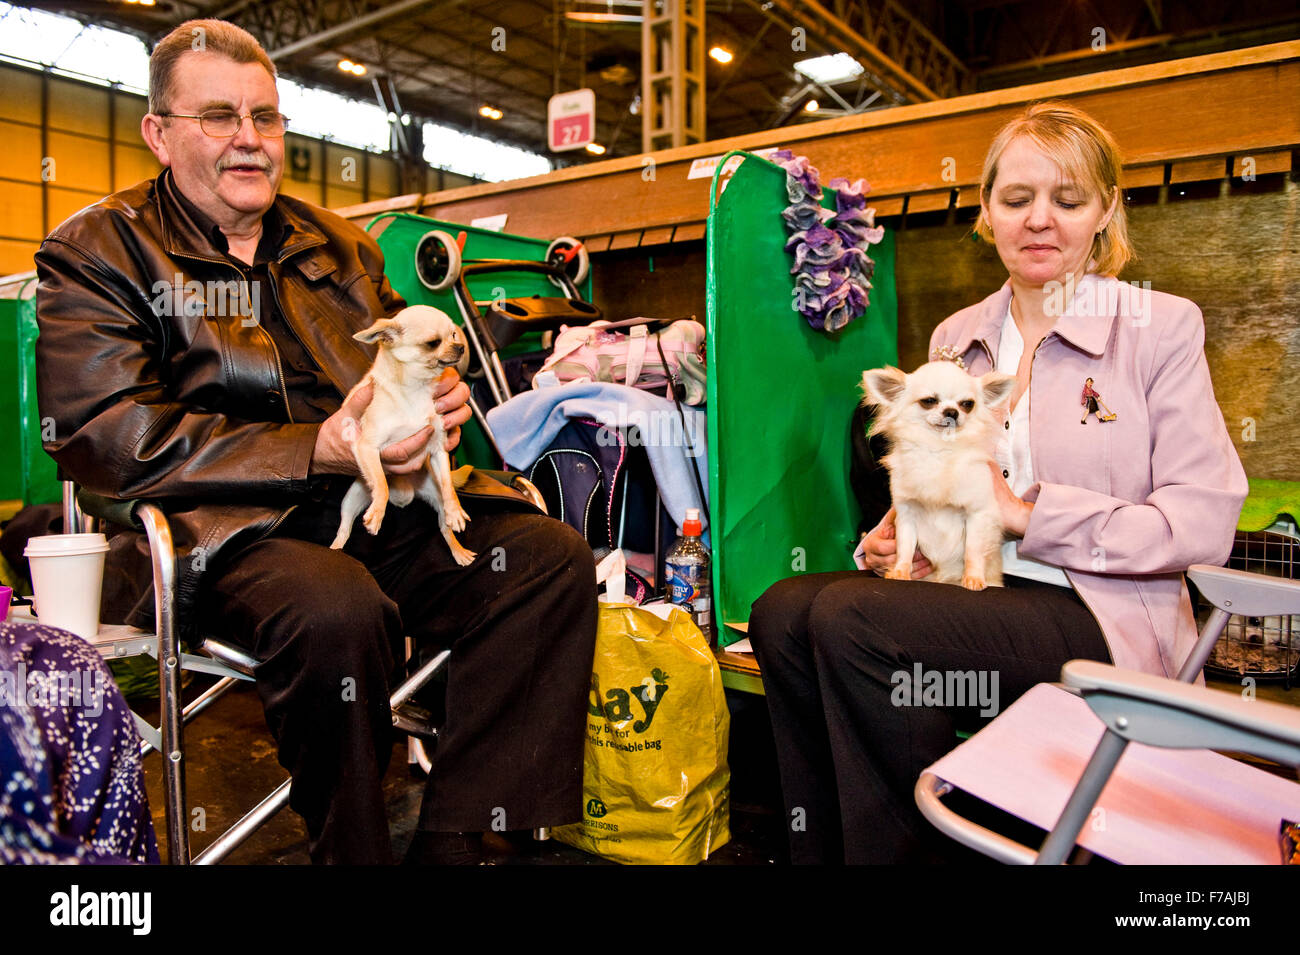 Crufts dog show badge chien caniche passionné de chien poodle lover Banque D'Images